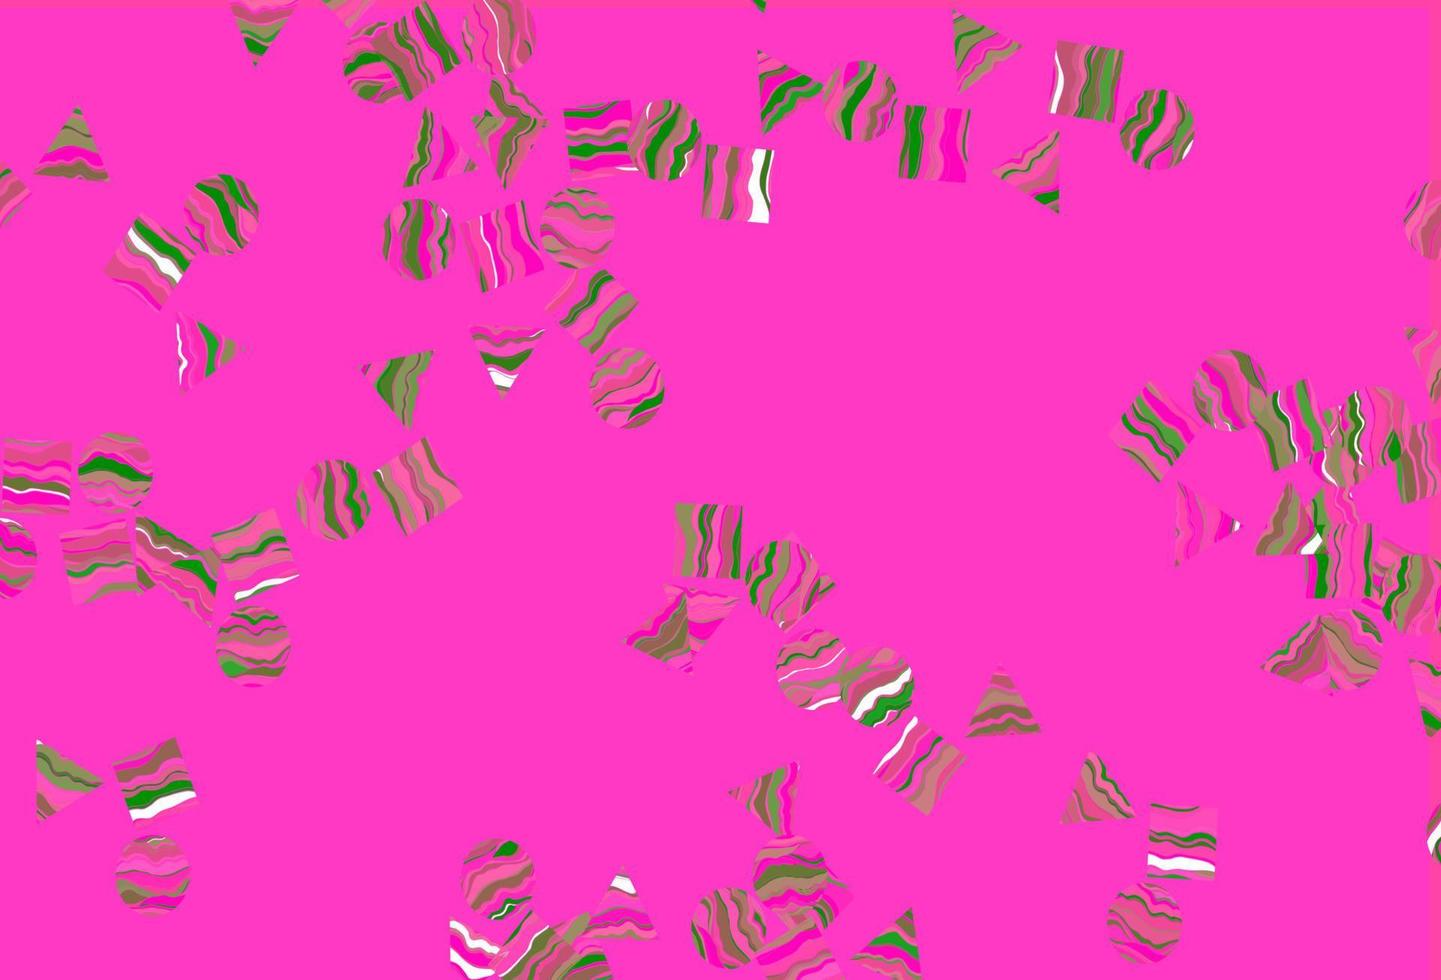 textura de vetor rosa claro, verde em estilo poli com círculos, cubos.